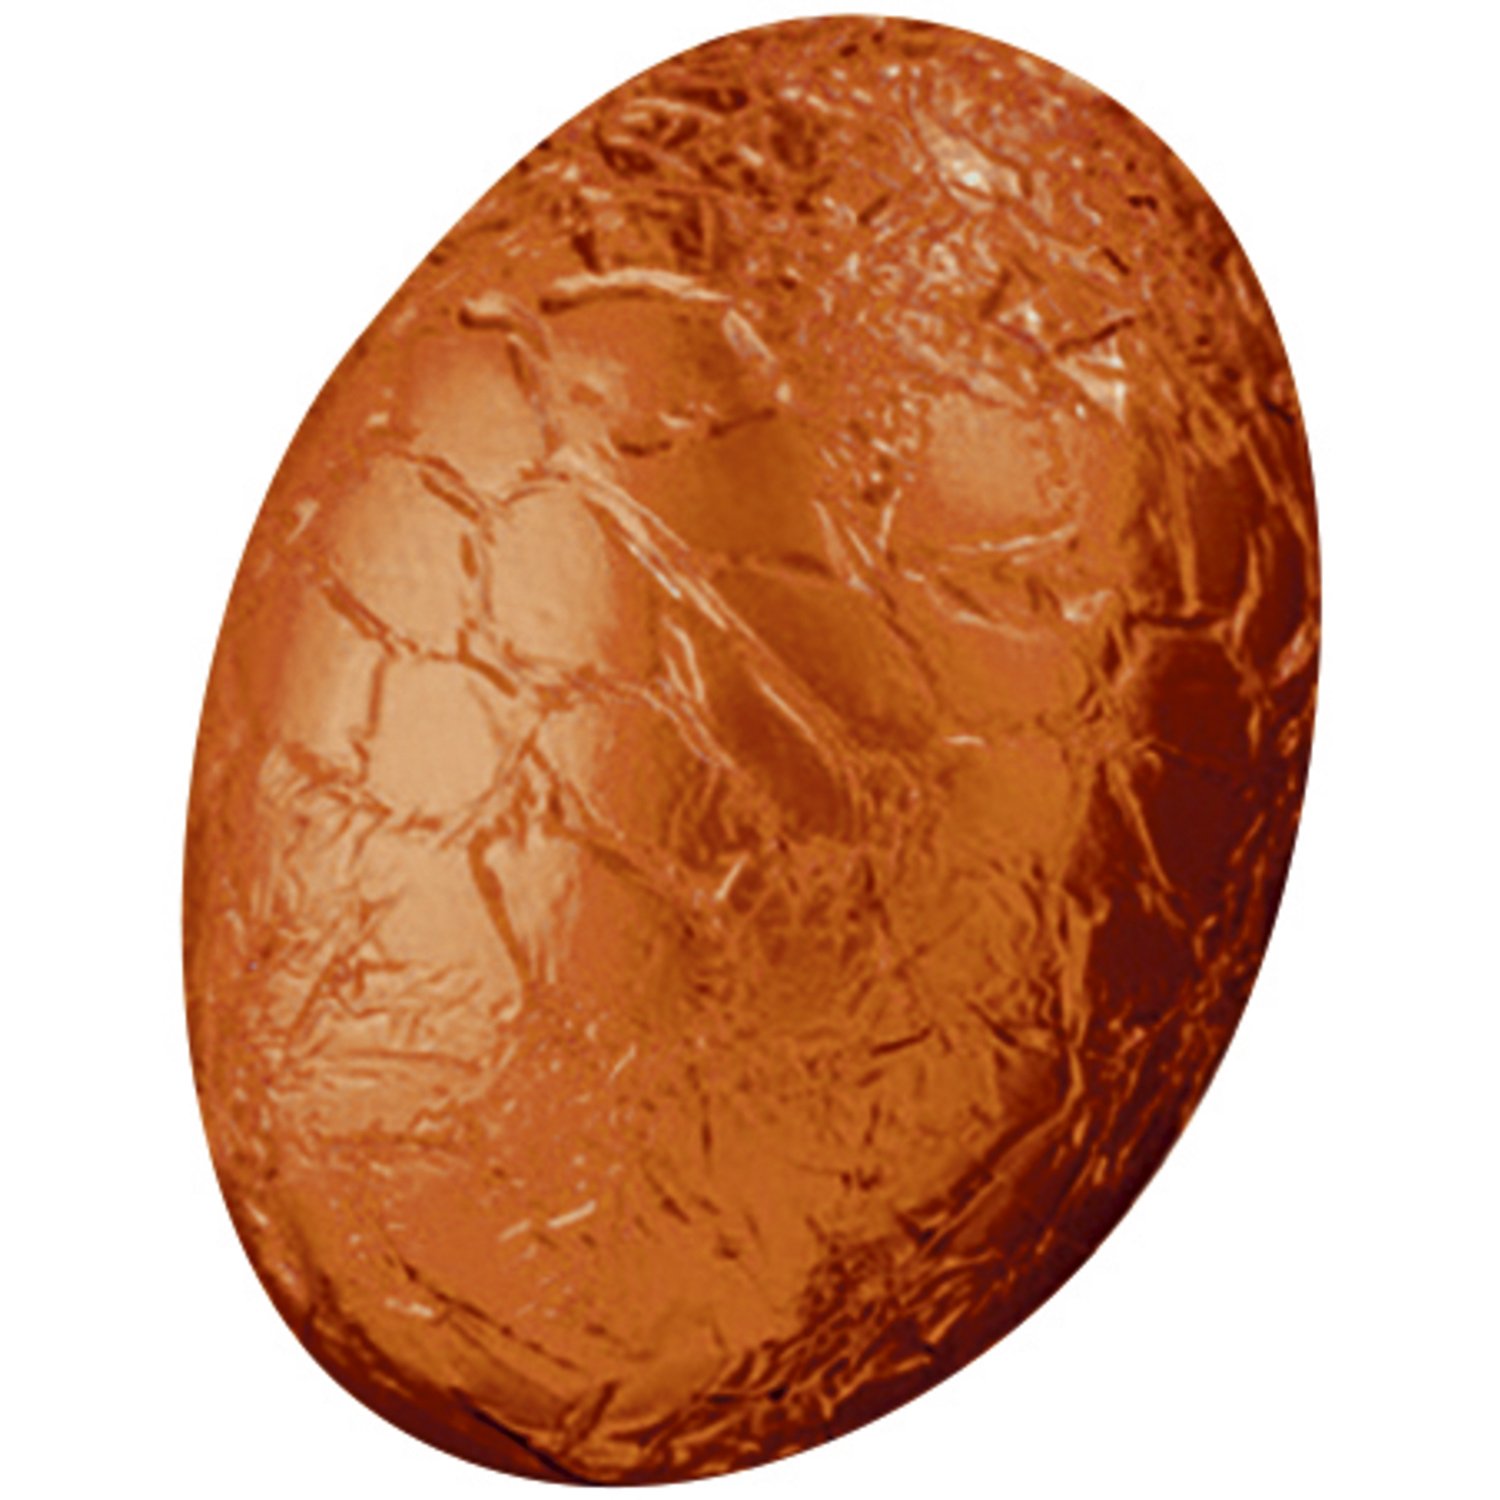 Dark choc mini eggs with orange praline in orange foil - app 11g - 2kg